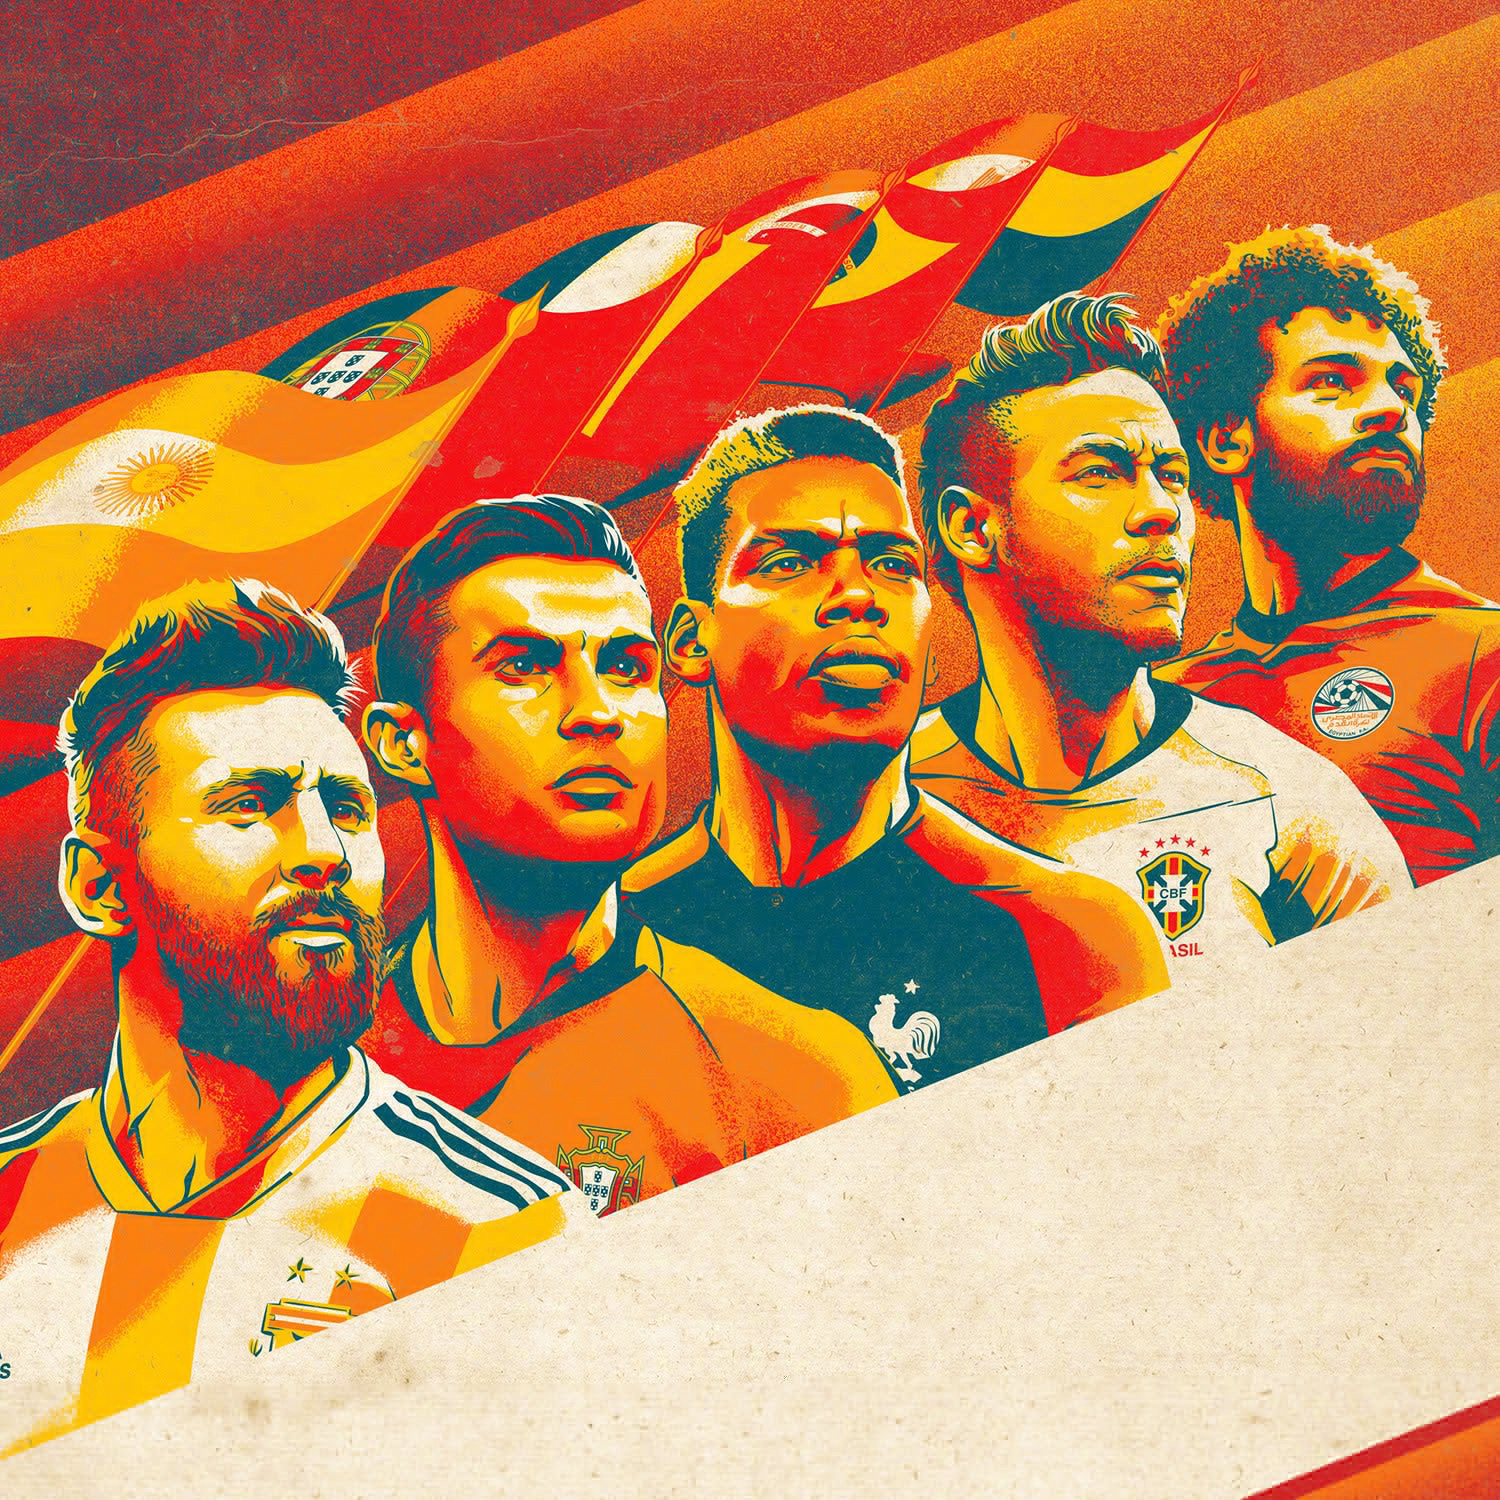 世界杯主题足球艺术海报又来啦!这次是《so foot》杂志封面系列